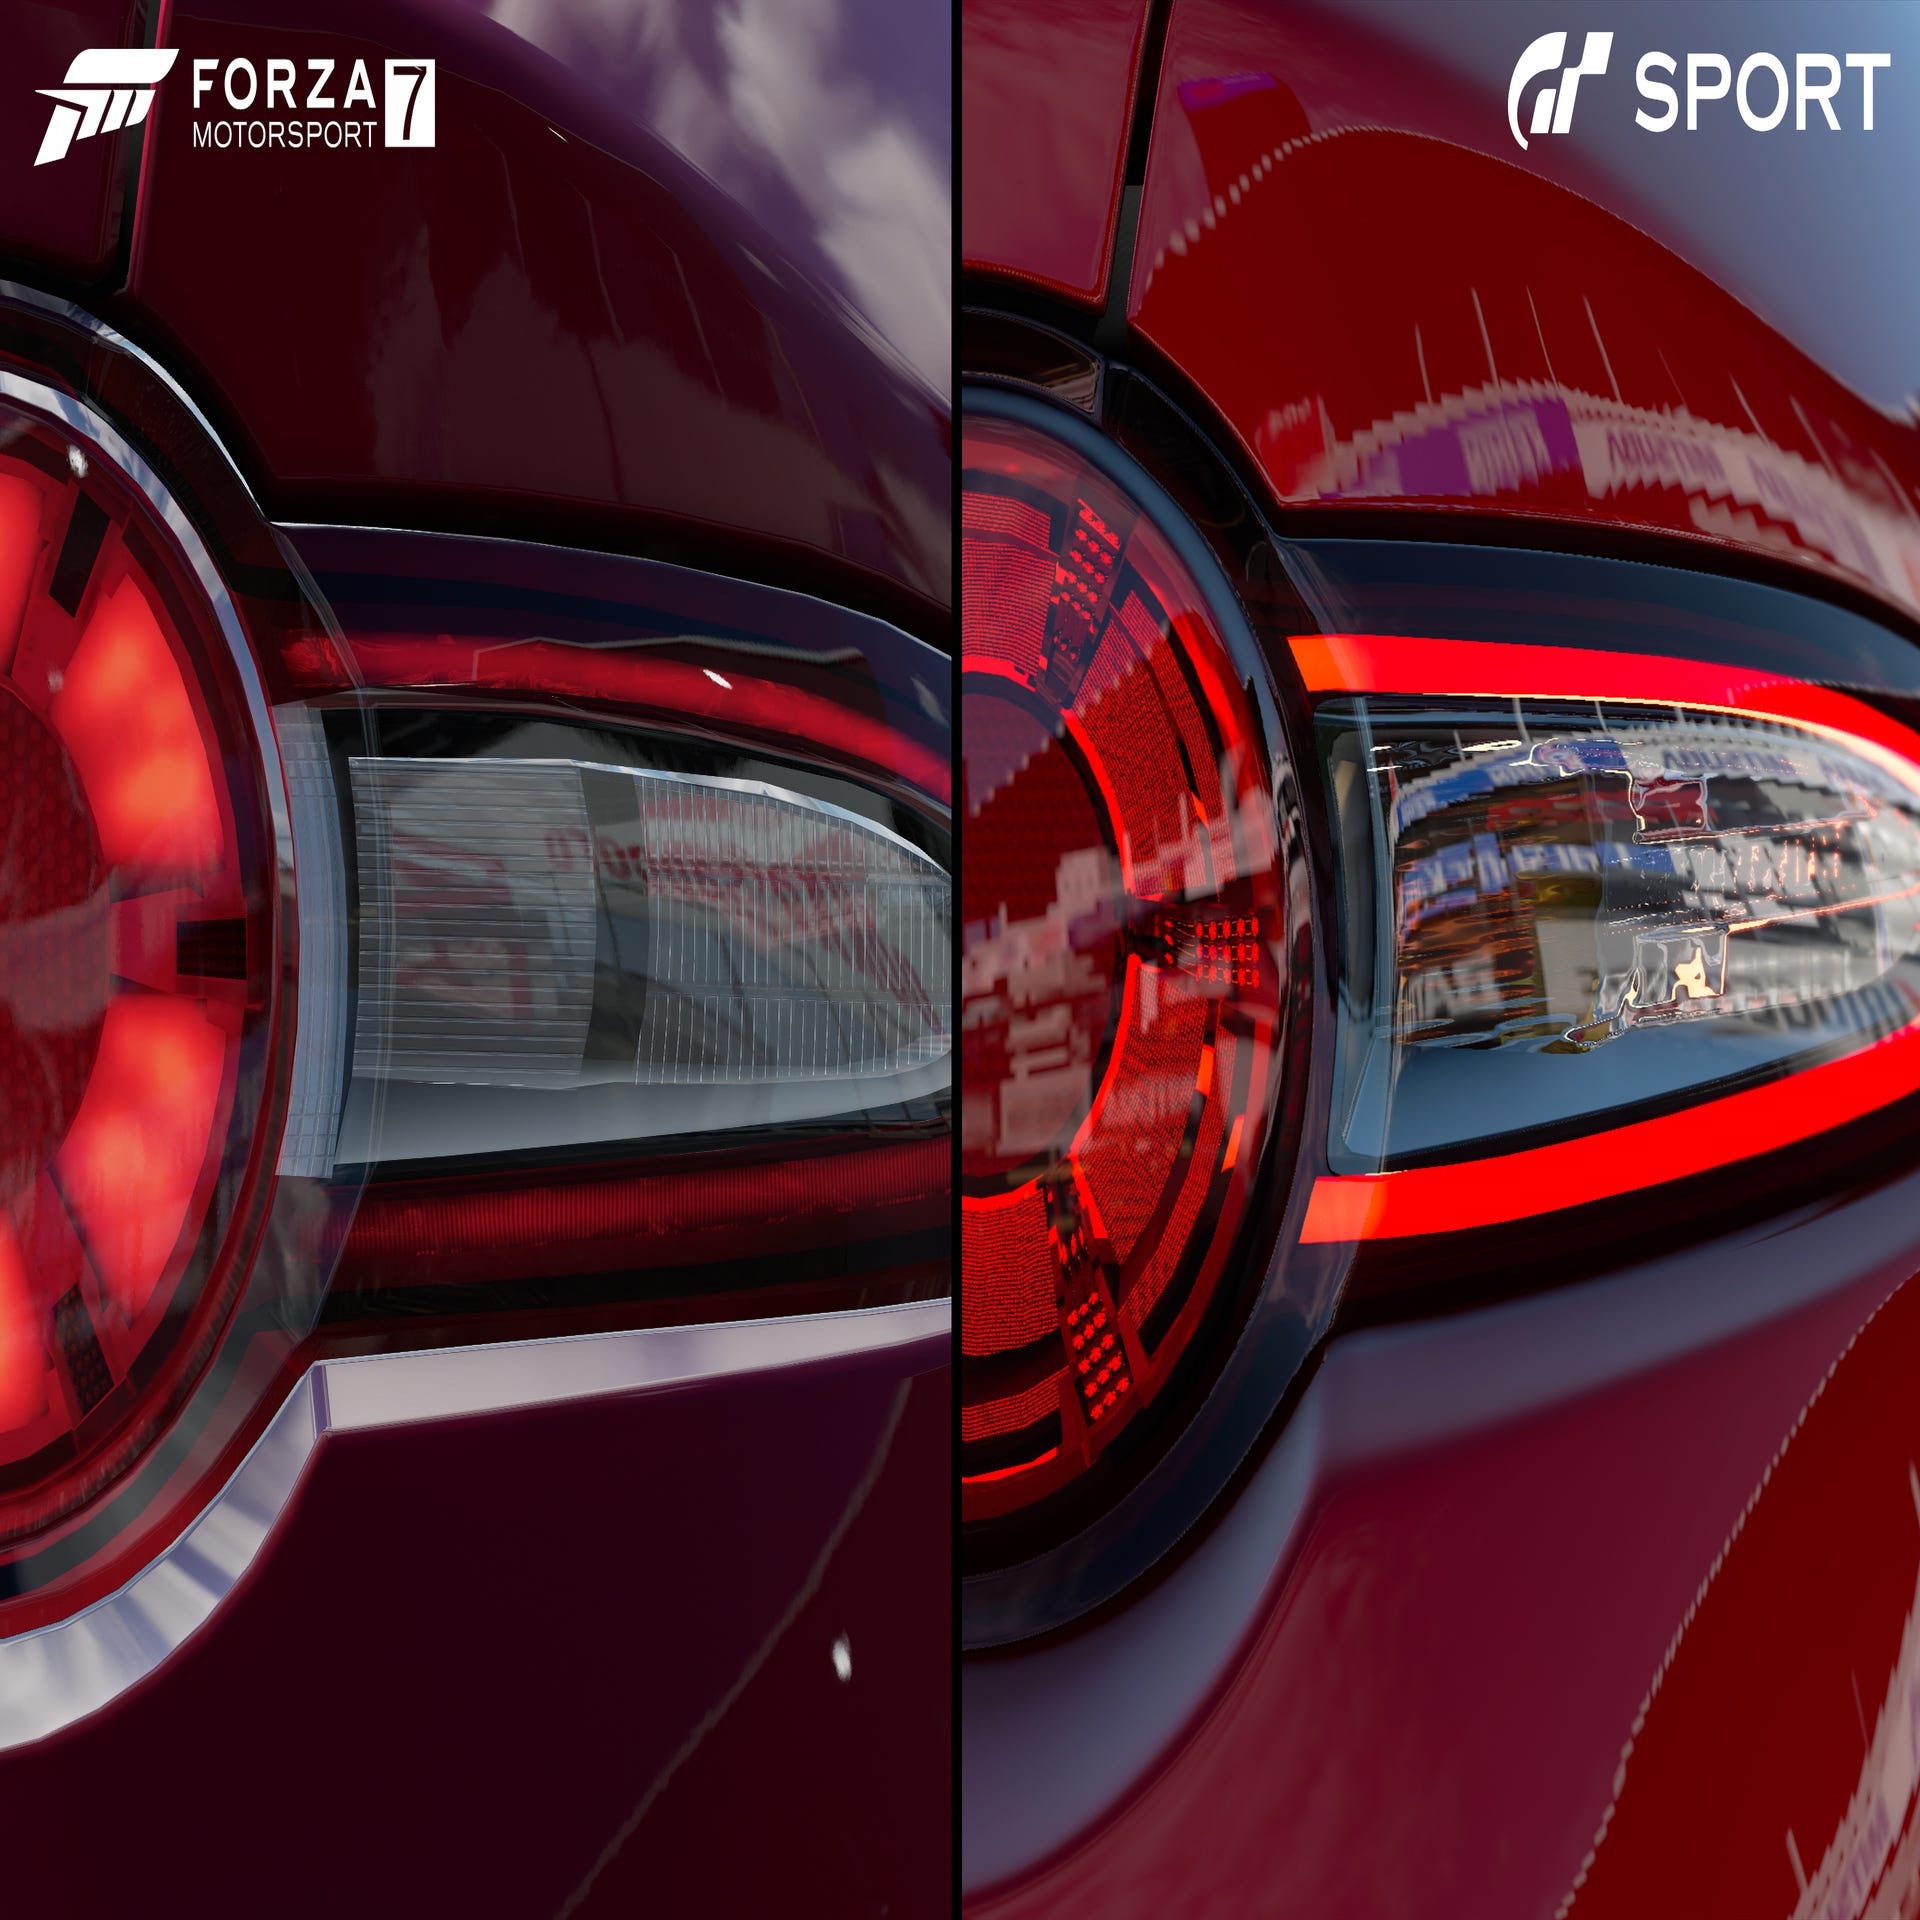 Gran Turismo 7 (PS5) Vs Forza Motorsport 8 (Xbox Series X)